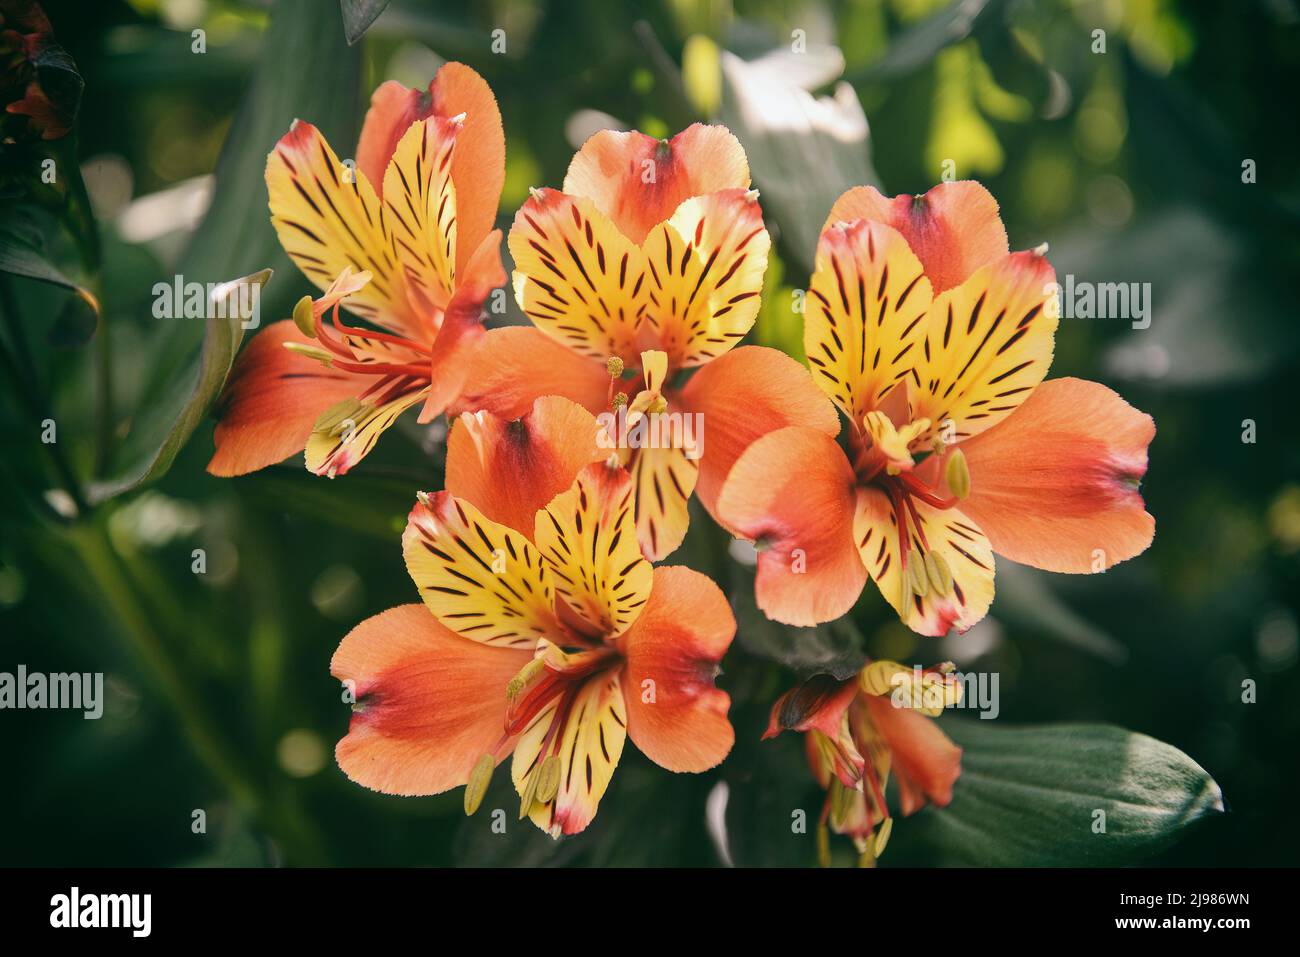 Alstroemeria, communément appelé le nénuphars péruvien ou nénuphars des Incas, est un genre de plantes à fleurs de la famille des Alstroemeriaceae. Ils sont tous nati Banque D'Images